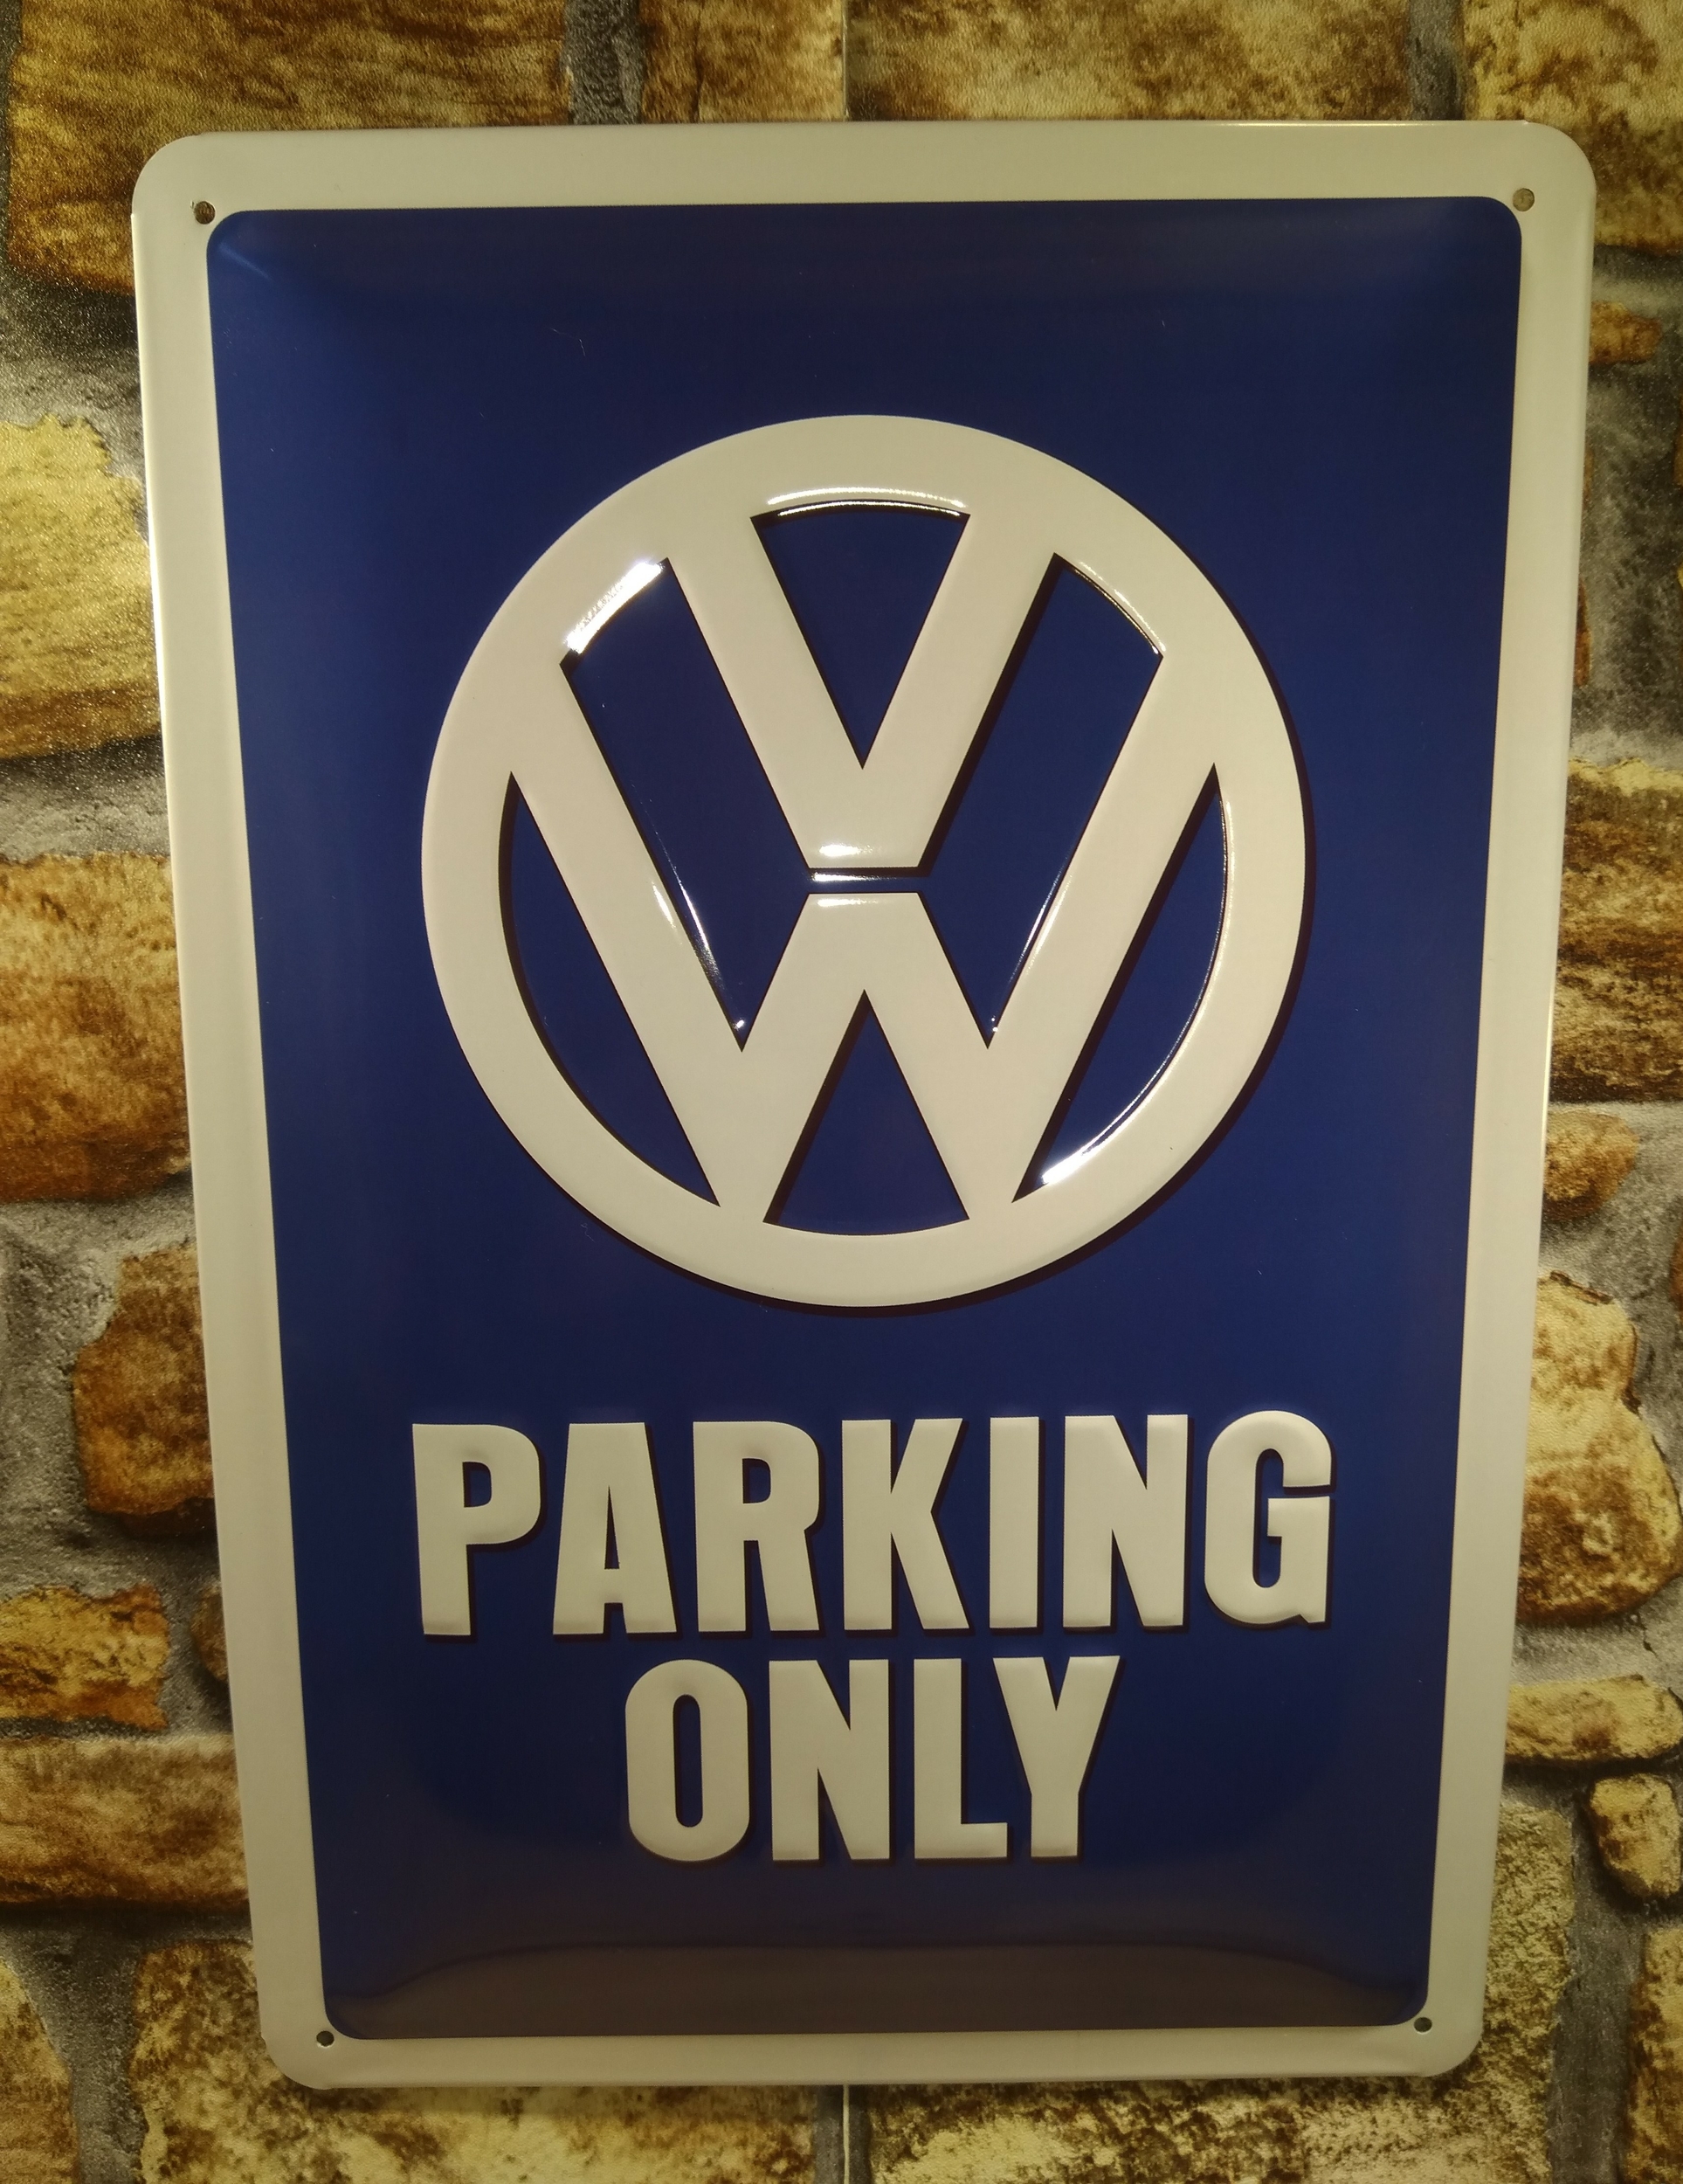 plaque déco publicitaire volkswagen parking only